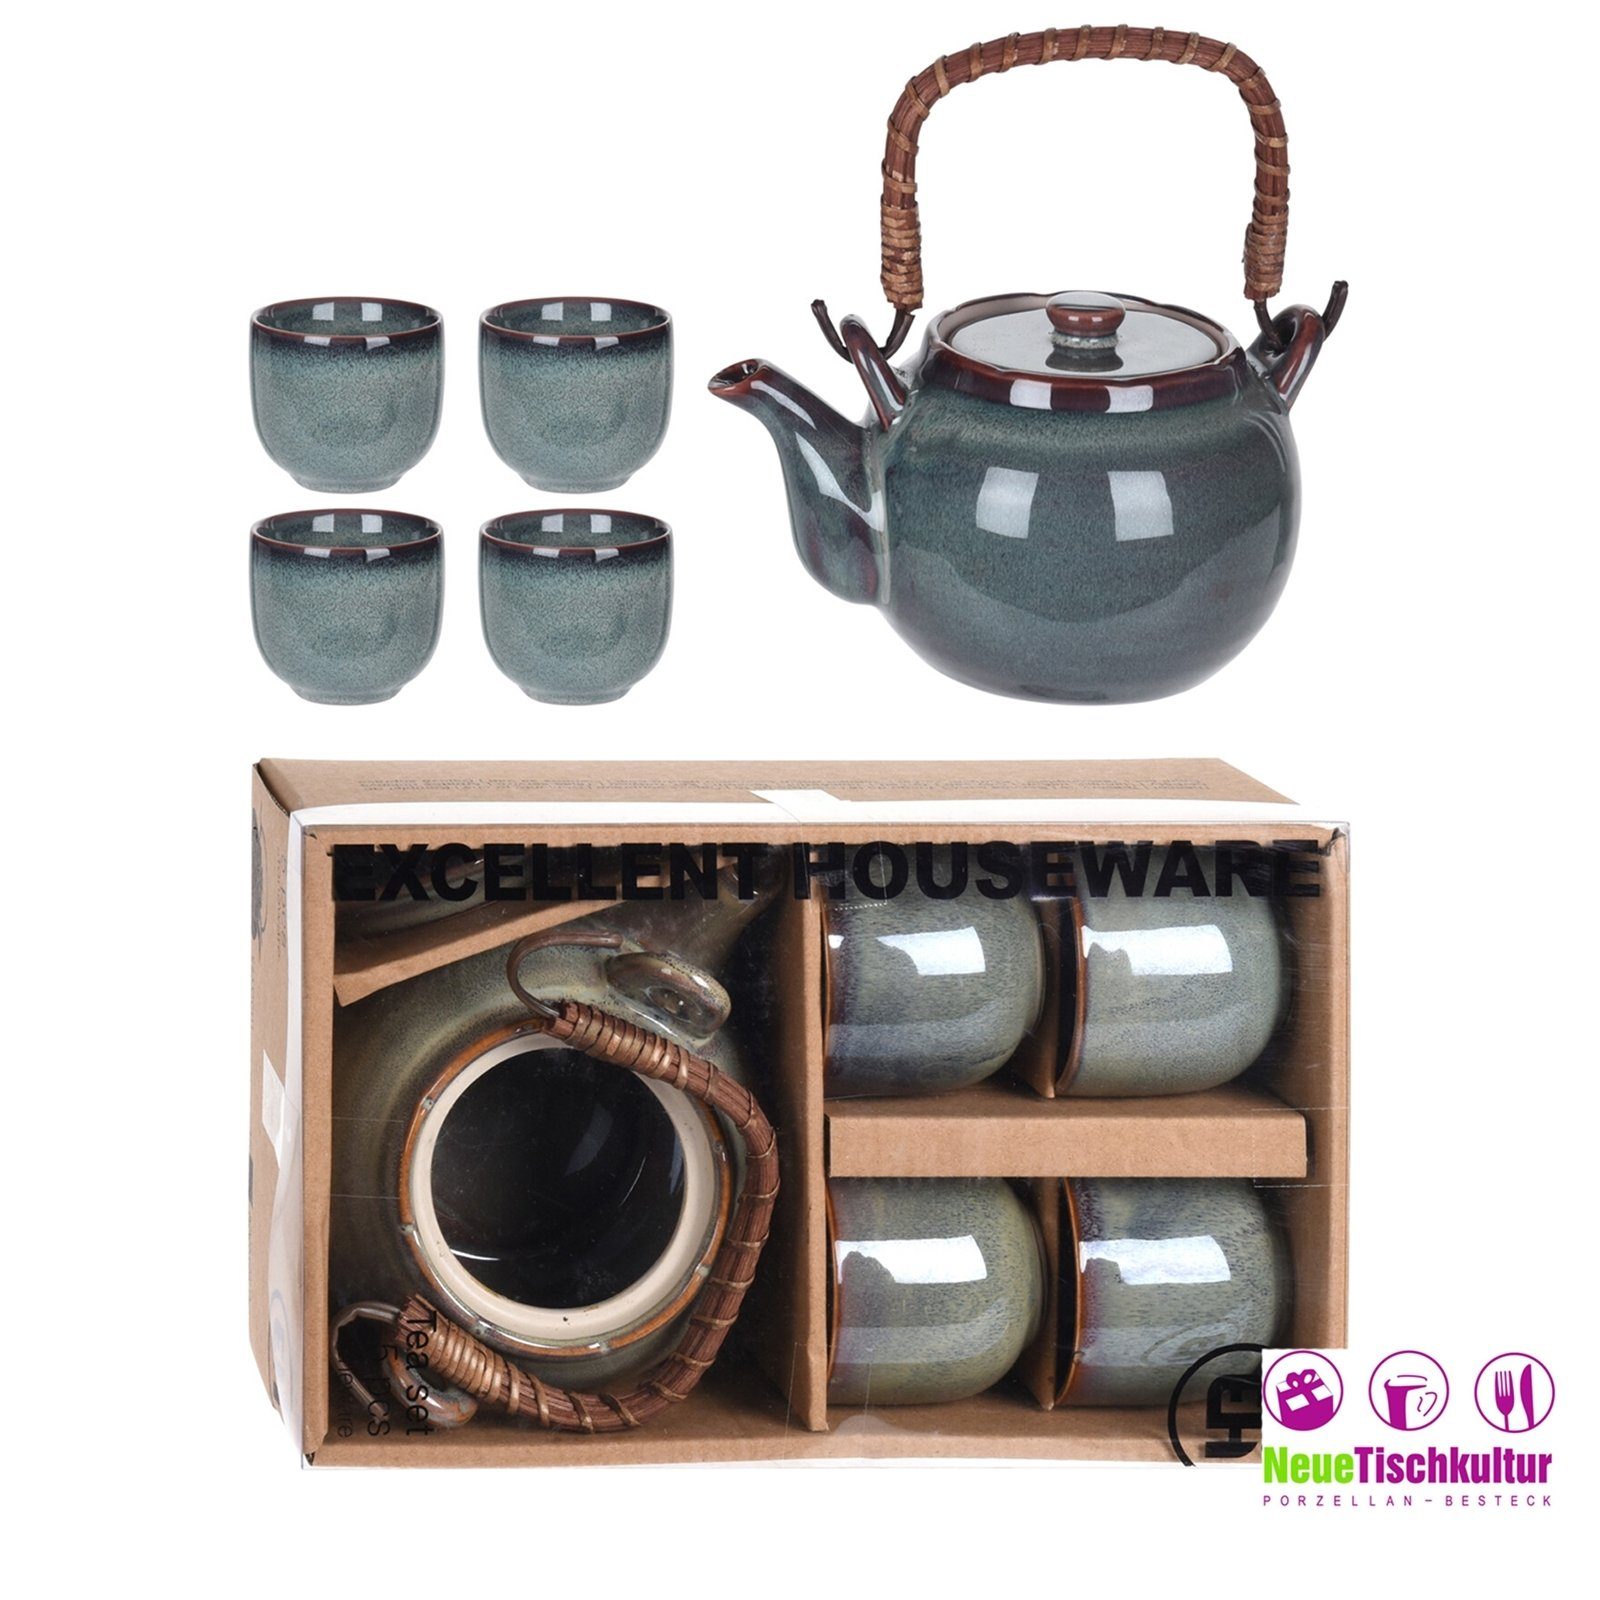 mit Teekanne 4 Neuetischkultur Becher Teekanne Keramik